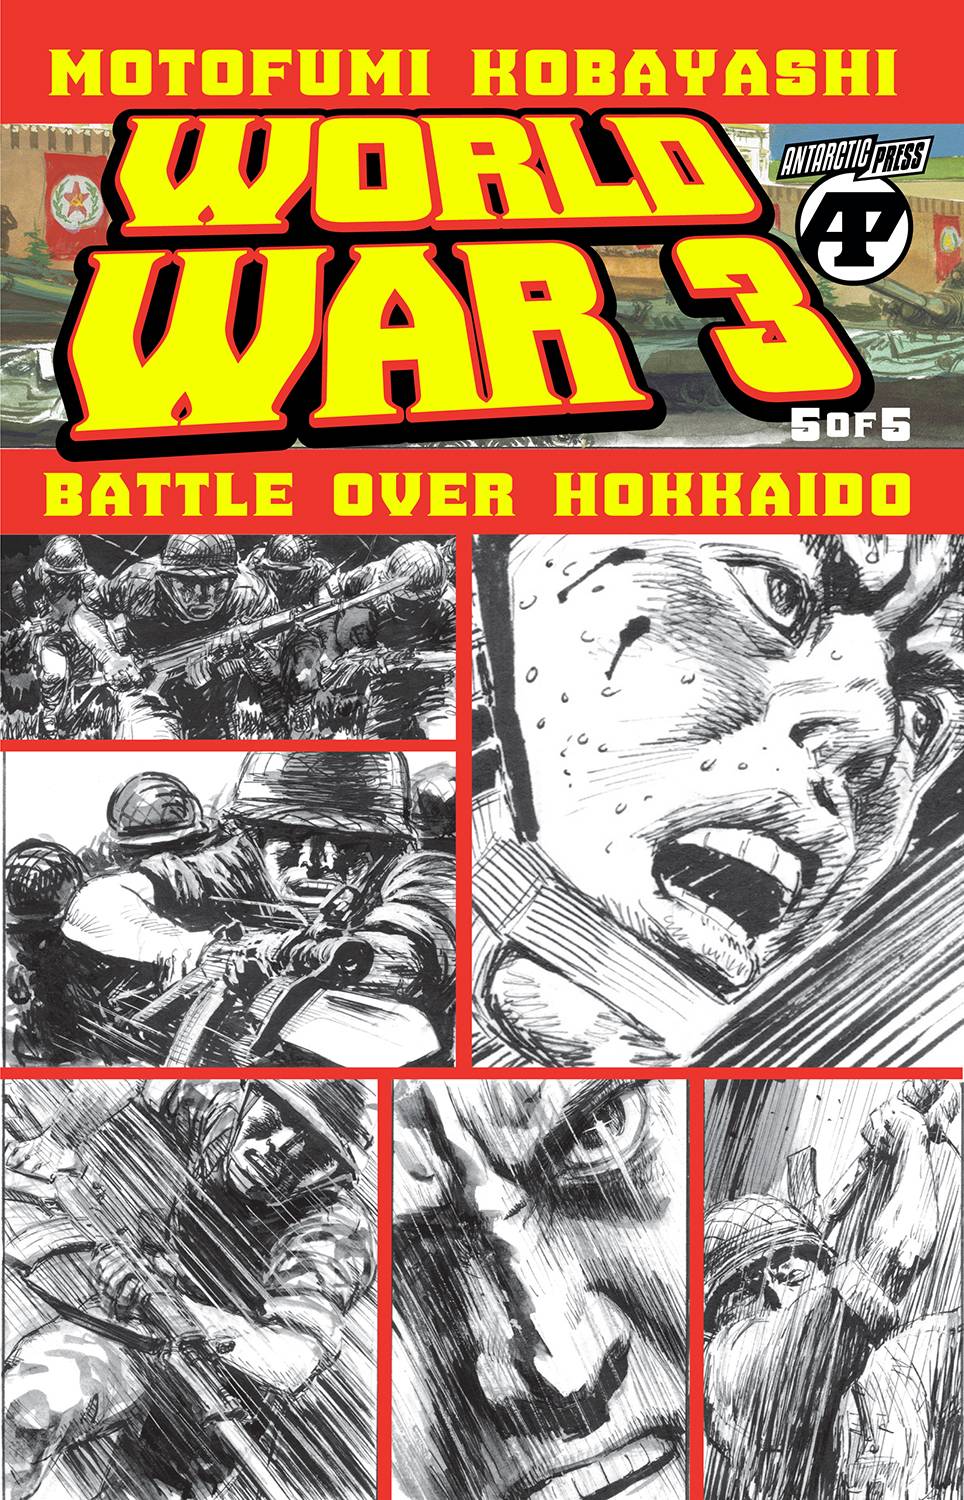 WORLD WAR 3 BATTLE OVER HOKKAIDO